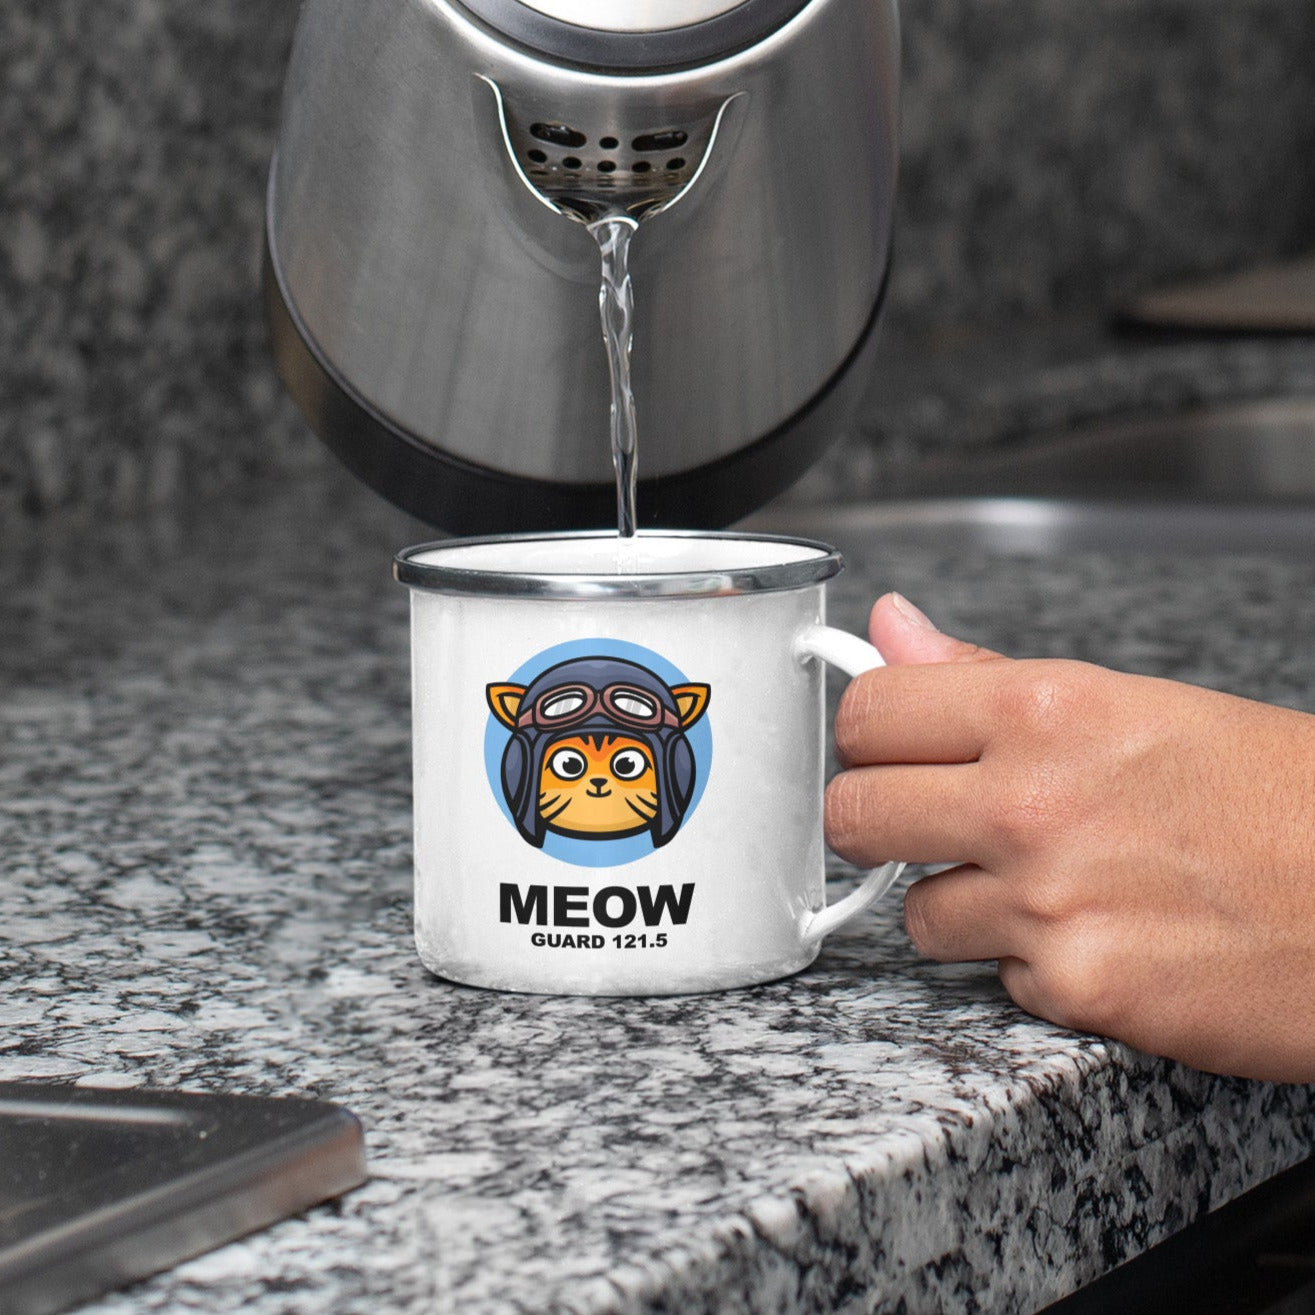 Meow on Guard Mugs